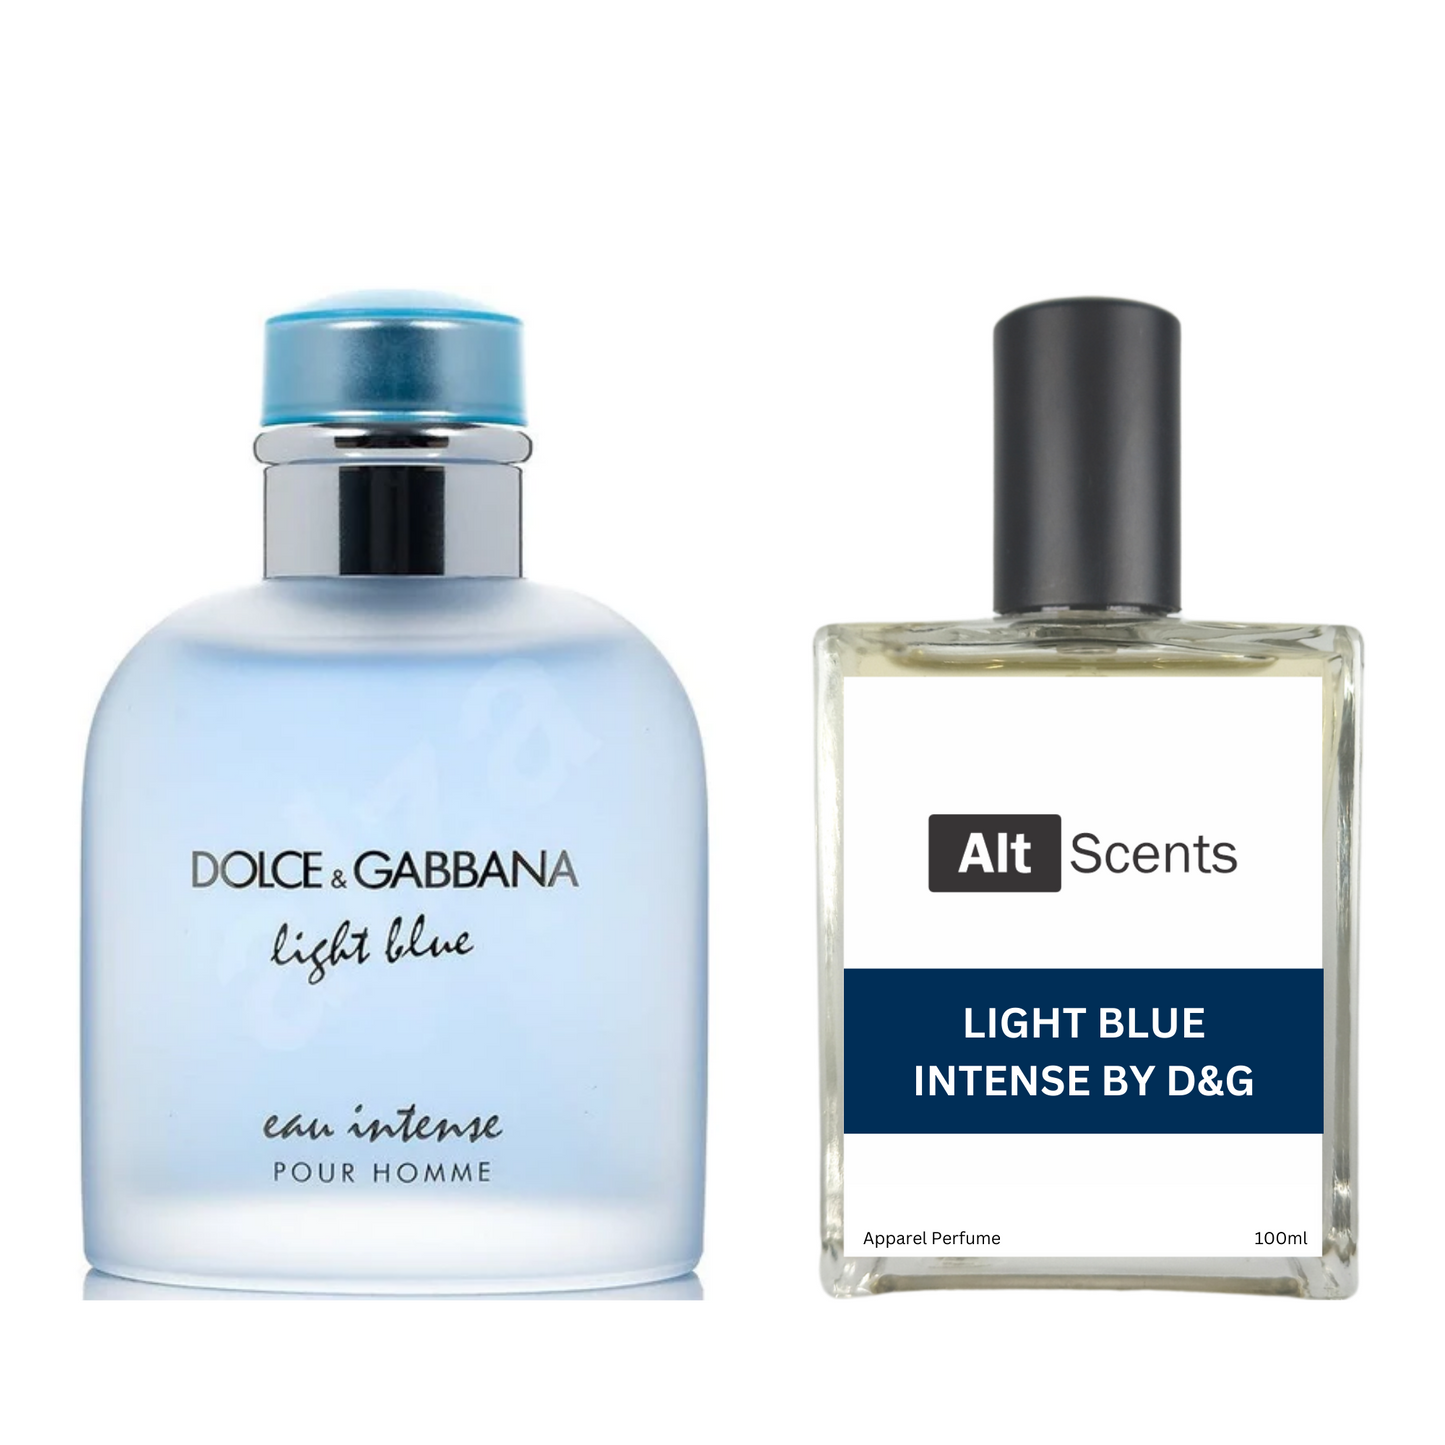 Light Blue Intense by D&G type Perfume for Men